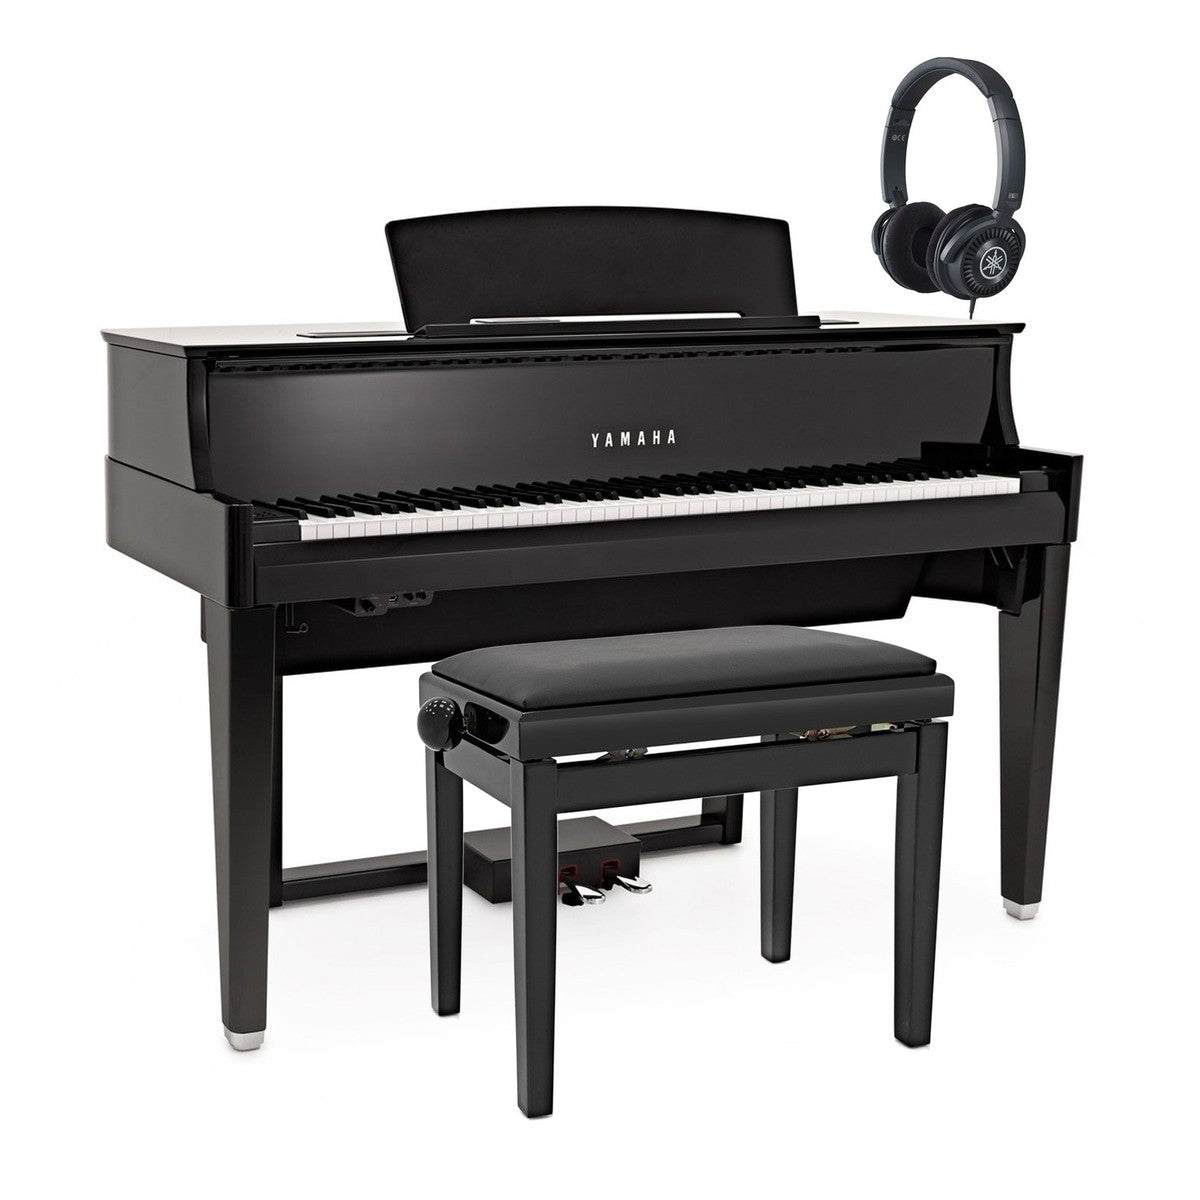 Đàn Piano Điện Yamaha N1 AvantGrand - Qua Sử Dụng